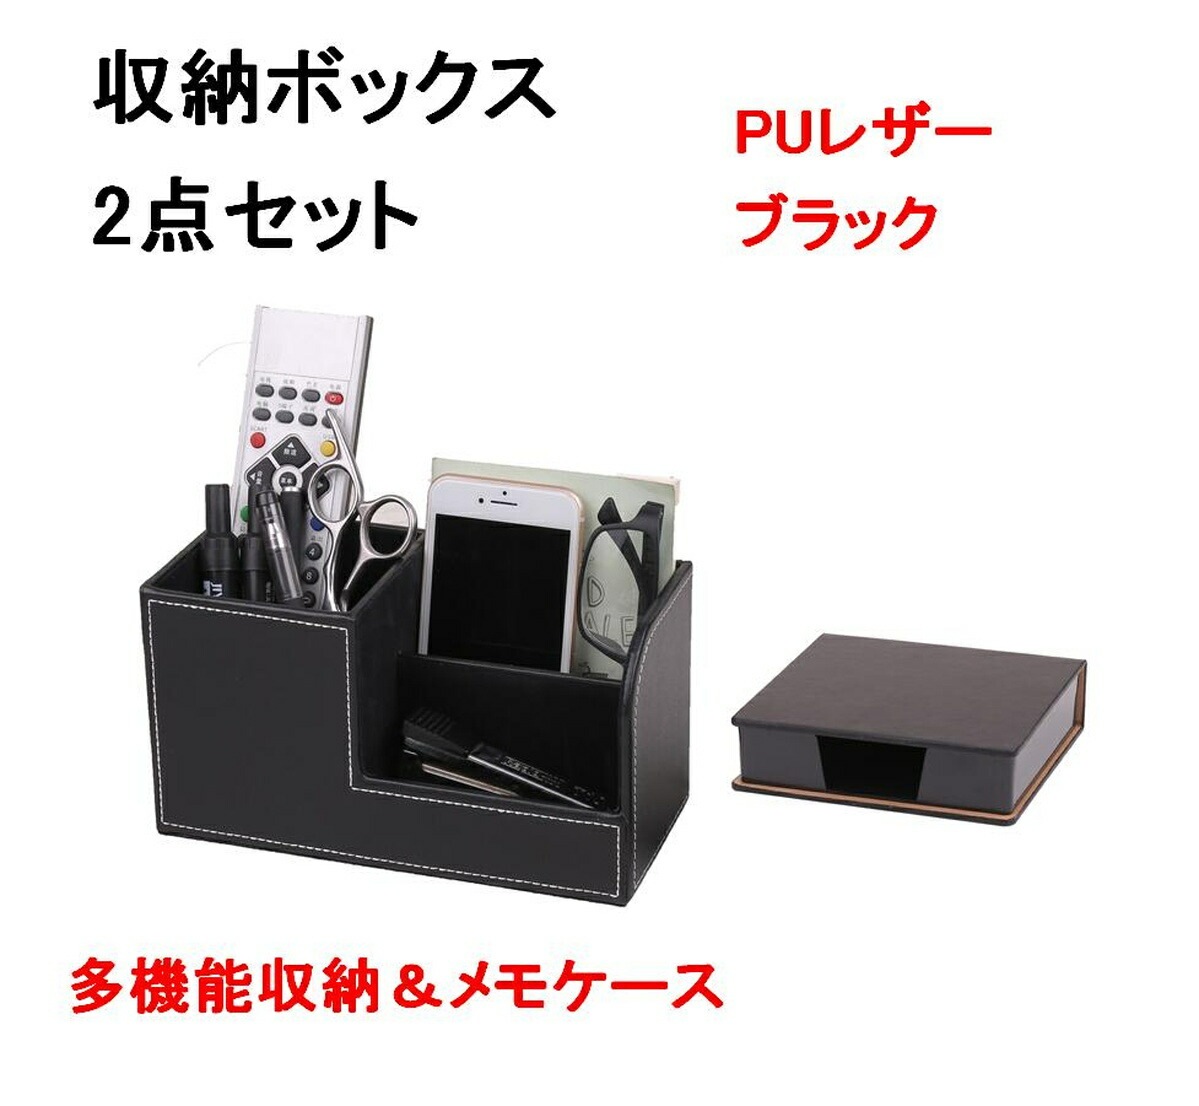 デスク 整理 ツール PU レザー 2点セット 贅沢 収納ボックス メモケース 多機能 81%OFF ブラック